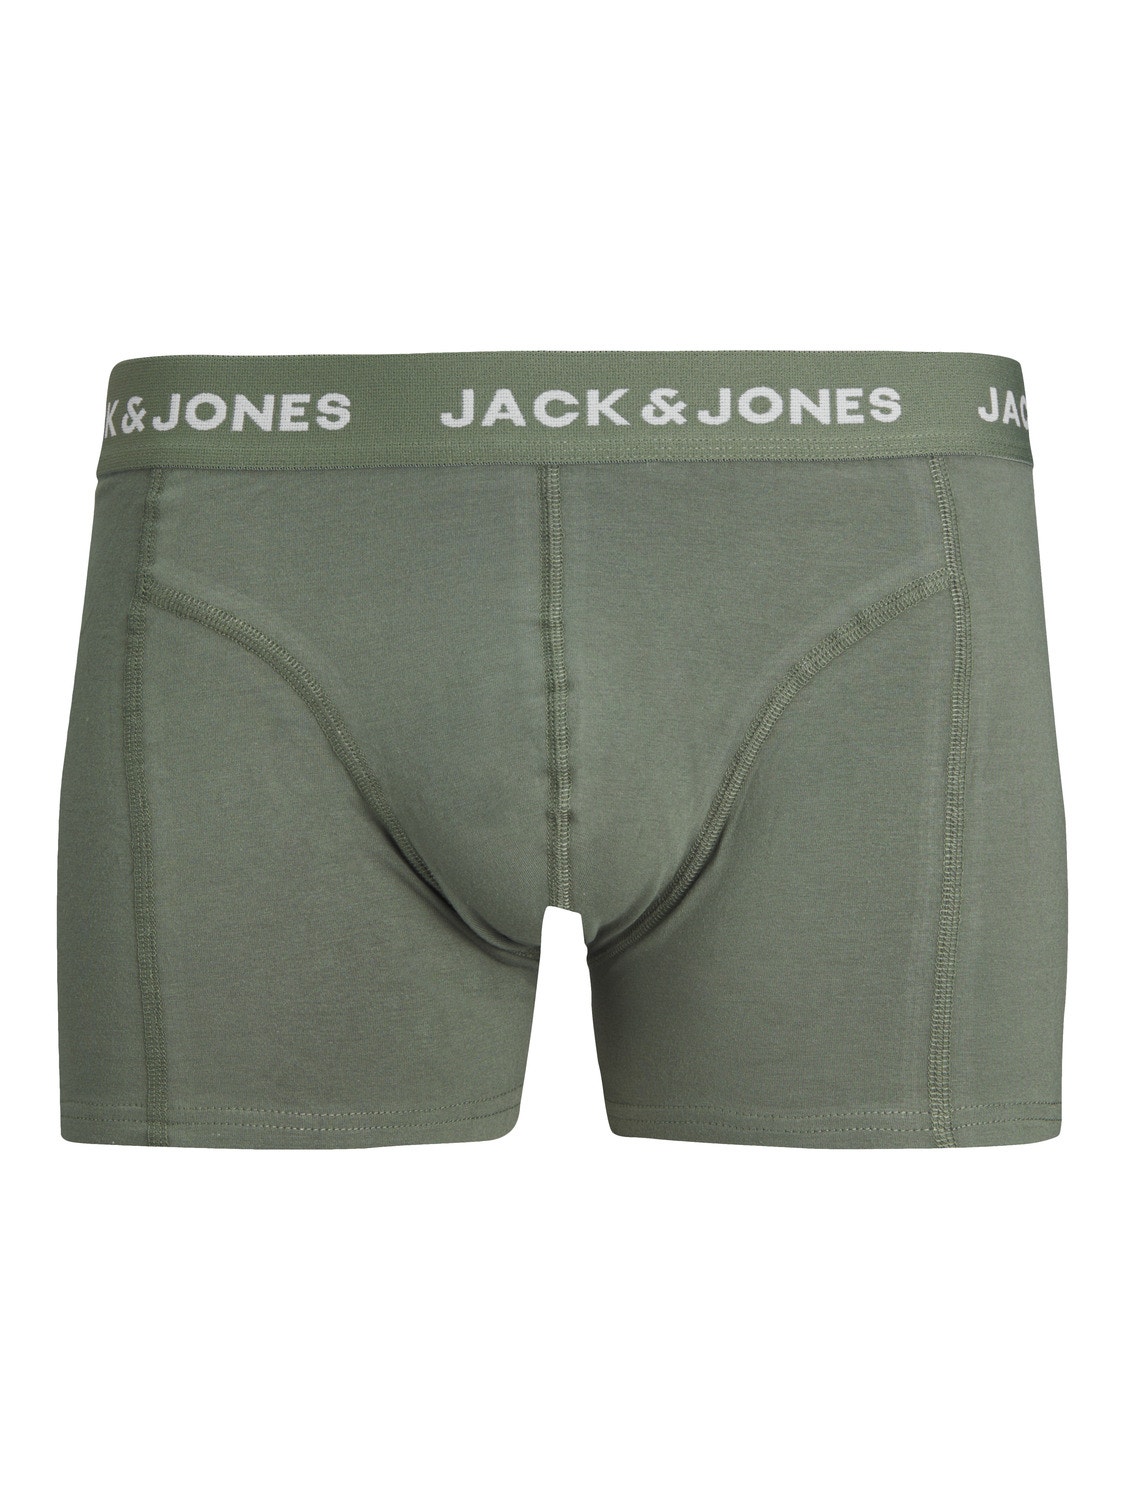 Jack & Jones Paquete de 3 Boxers -Tap Shoe - 12256550